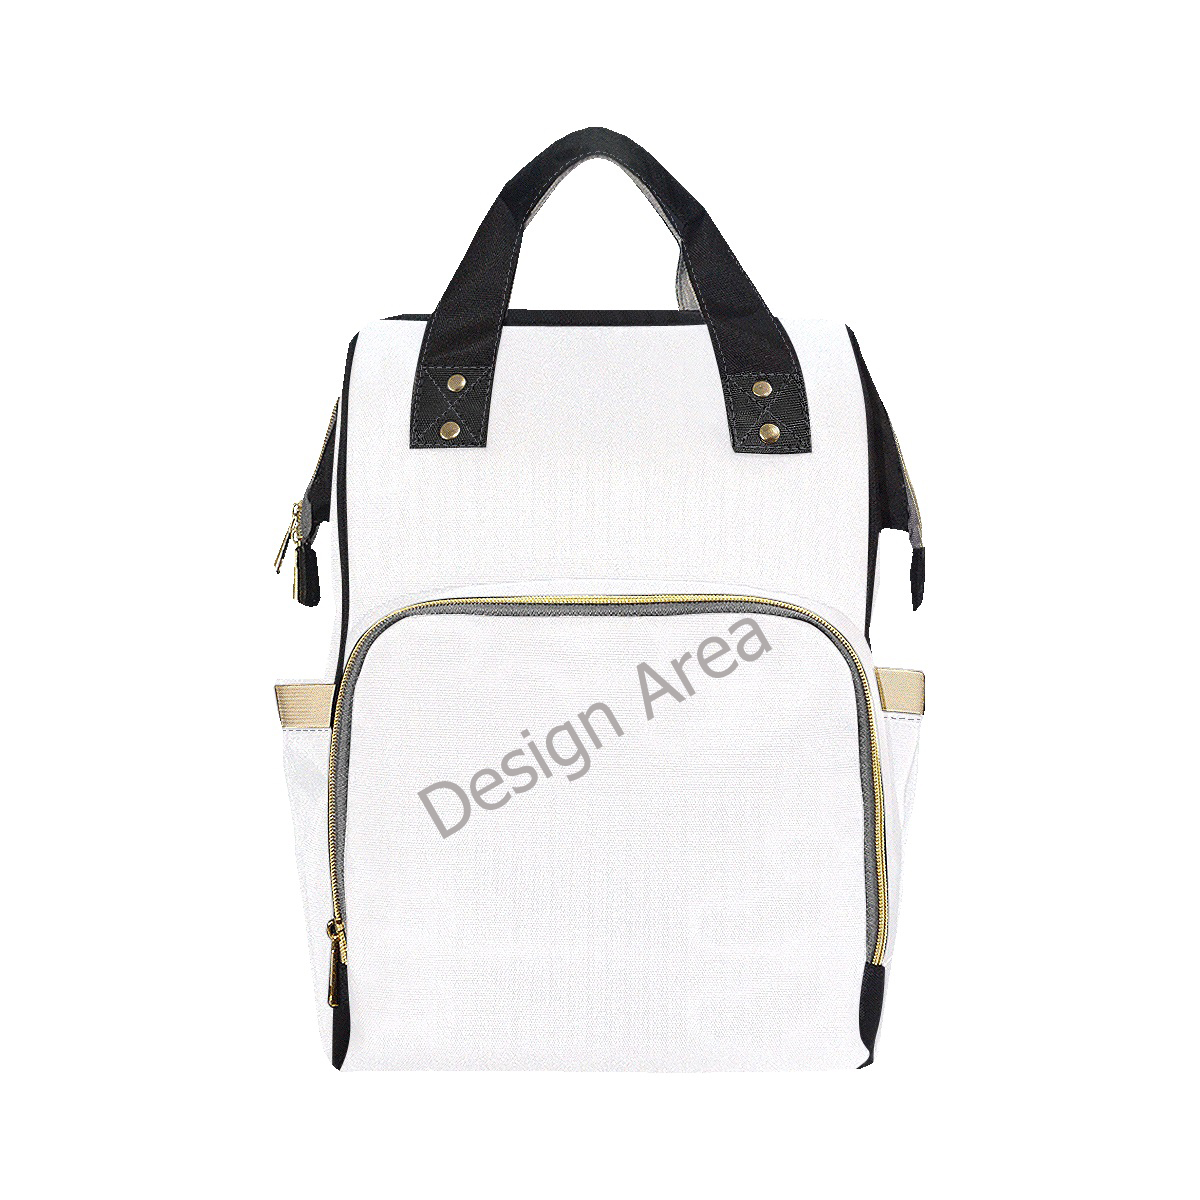 Multi-Function Diaper Backpack/Diaper Bag (Model 1688)